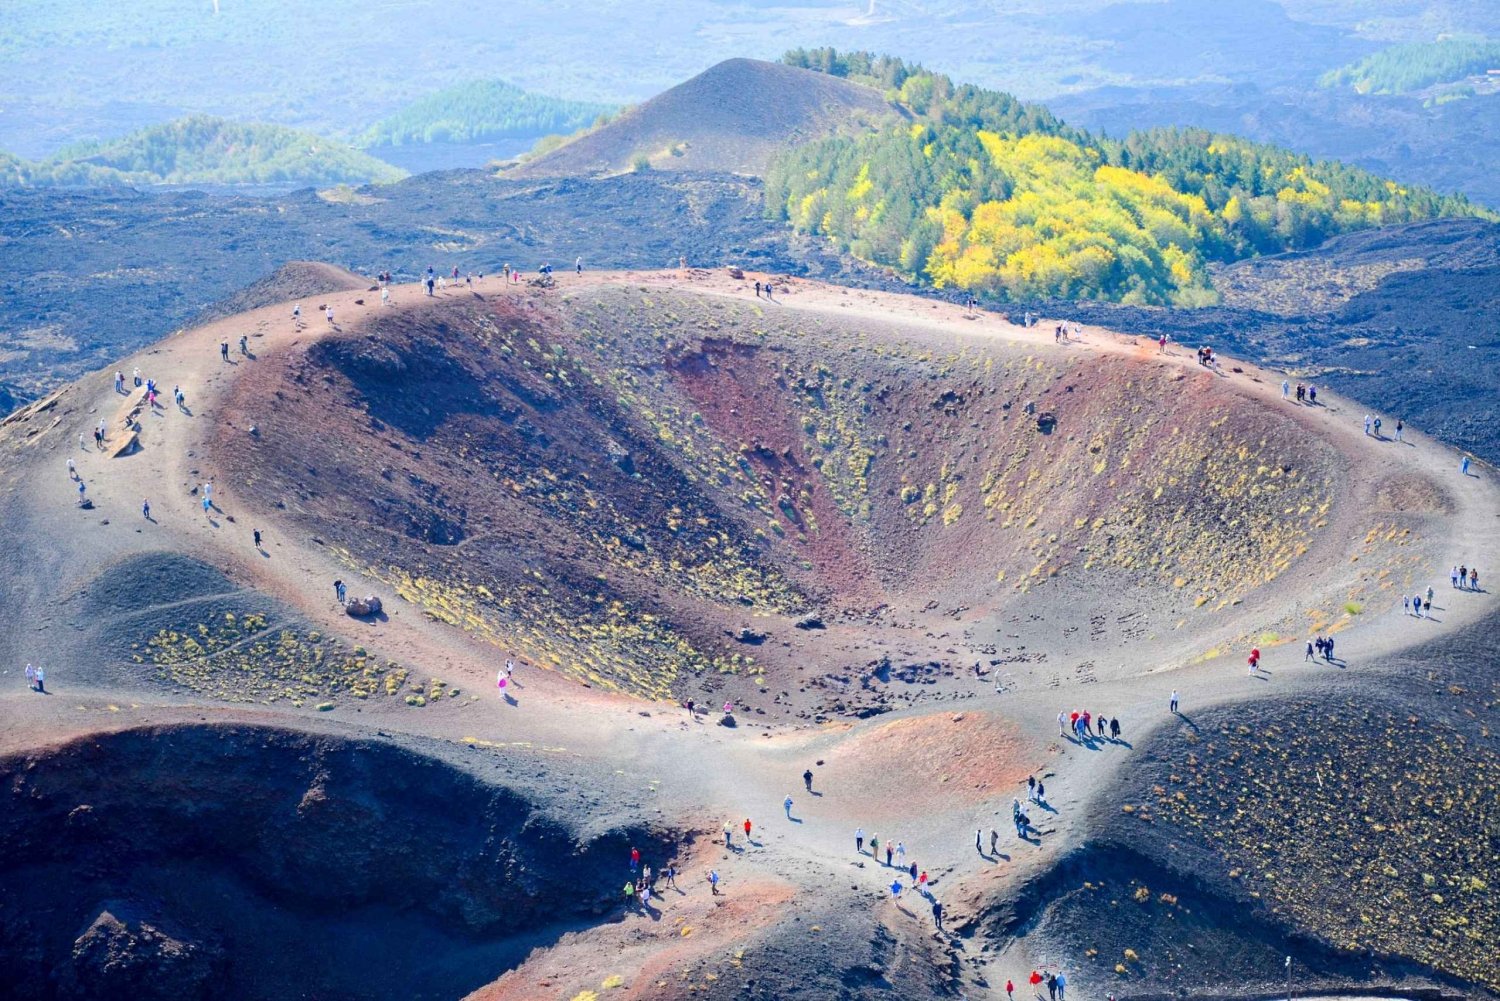 Catânia: excursão privada ao Monte Etna com degustação de comida e vinho